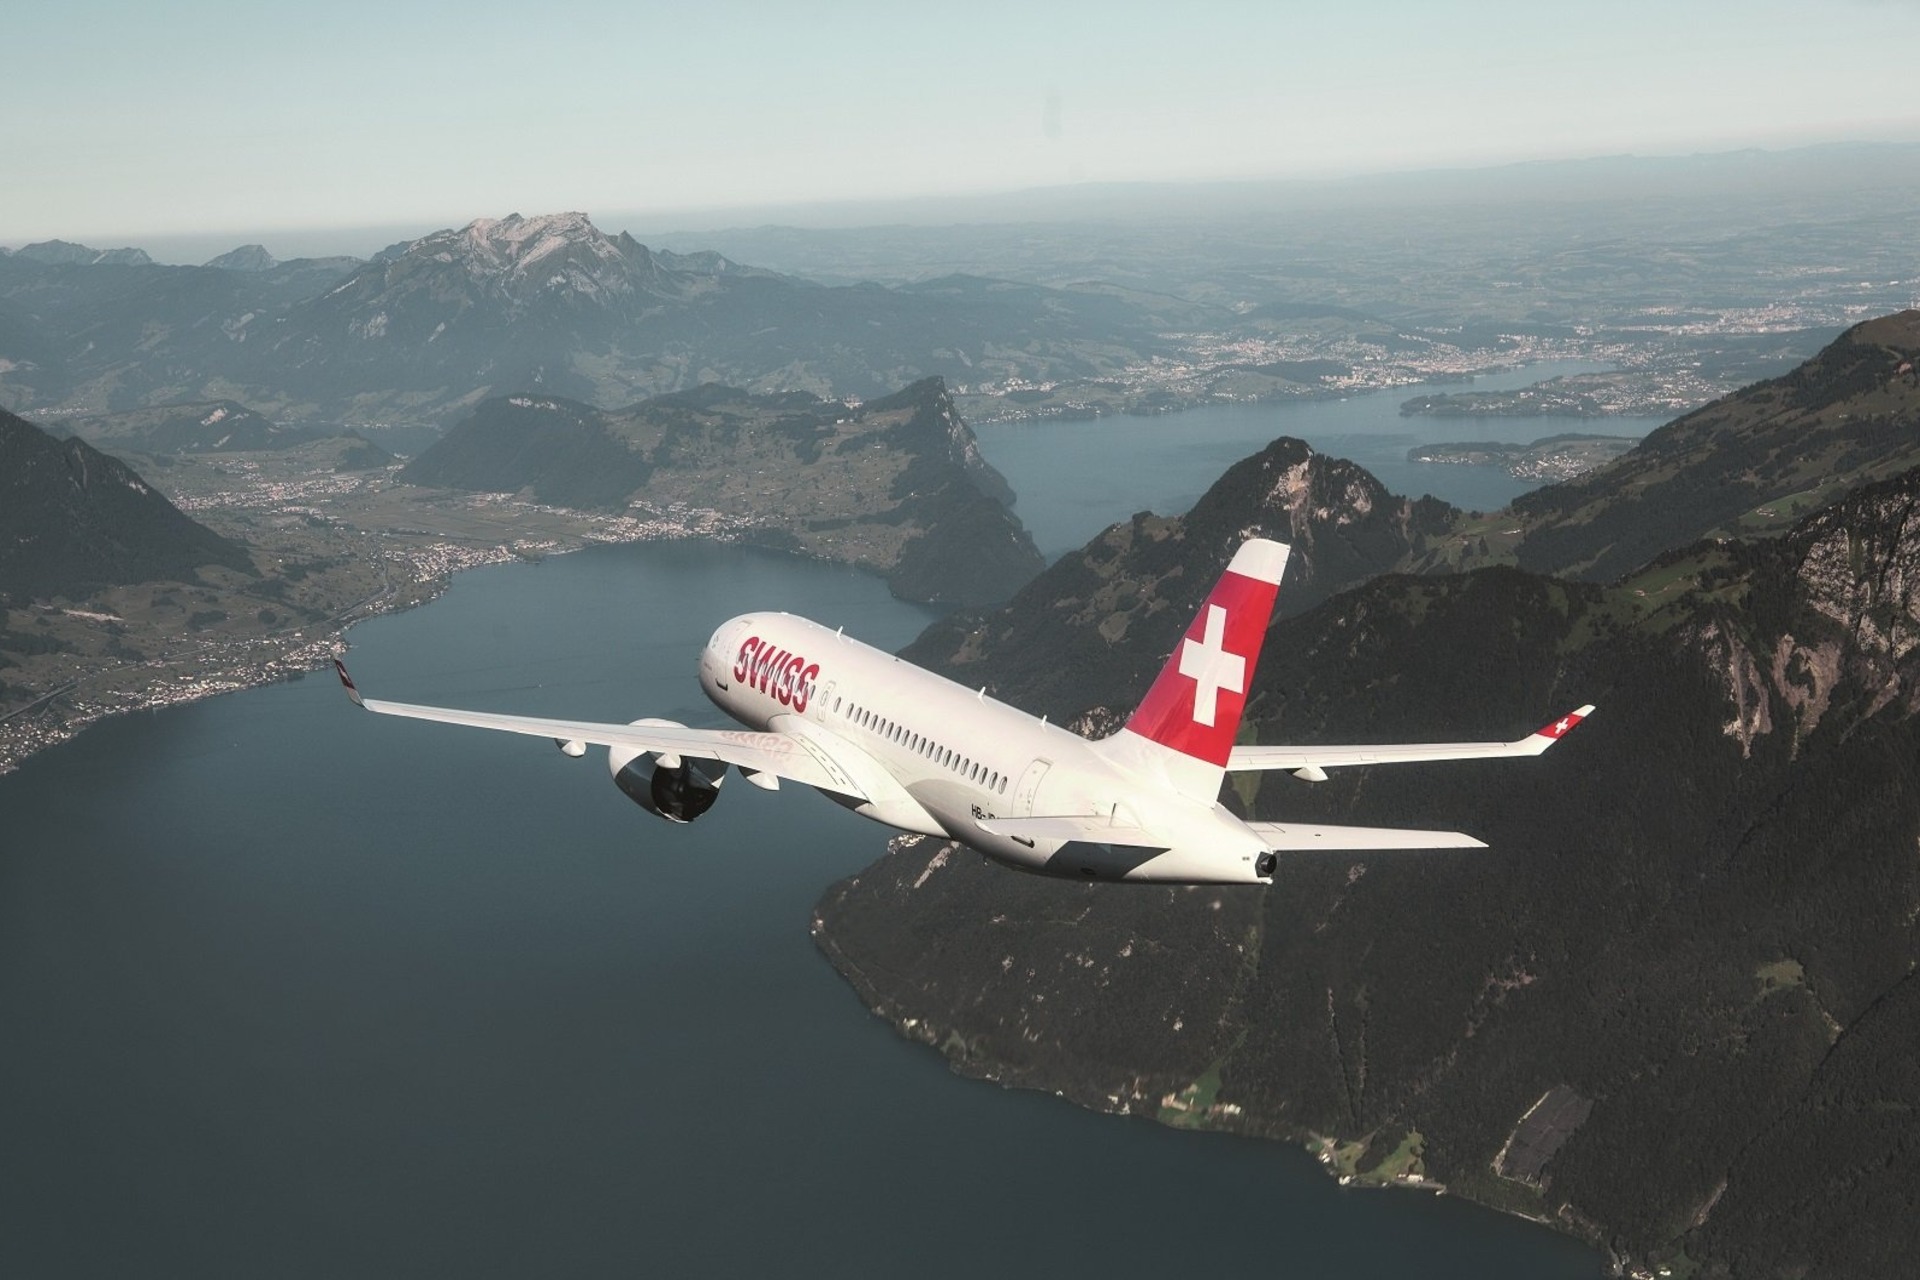 Un aeroplano della Swiss International Air Lines in fase di atterraggio